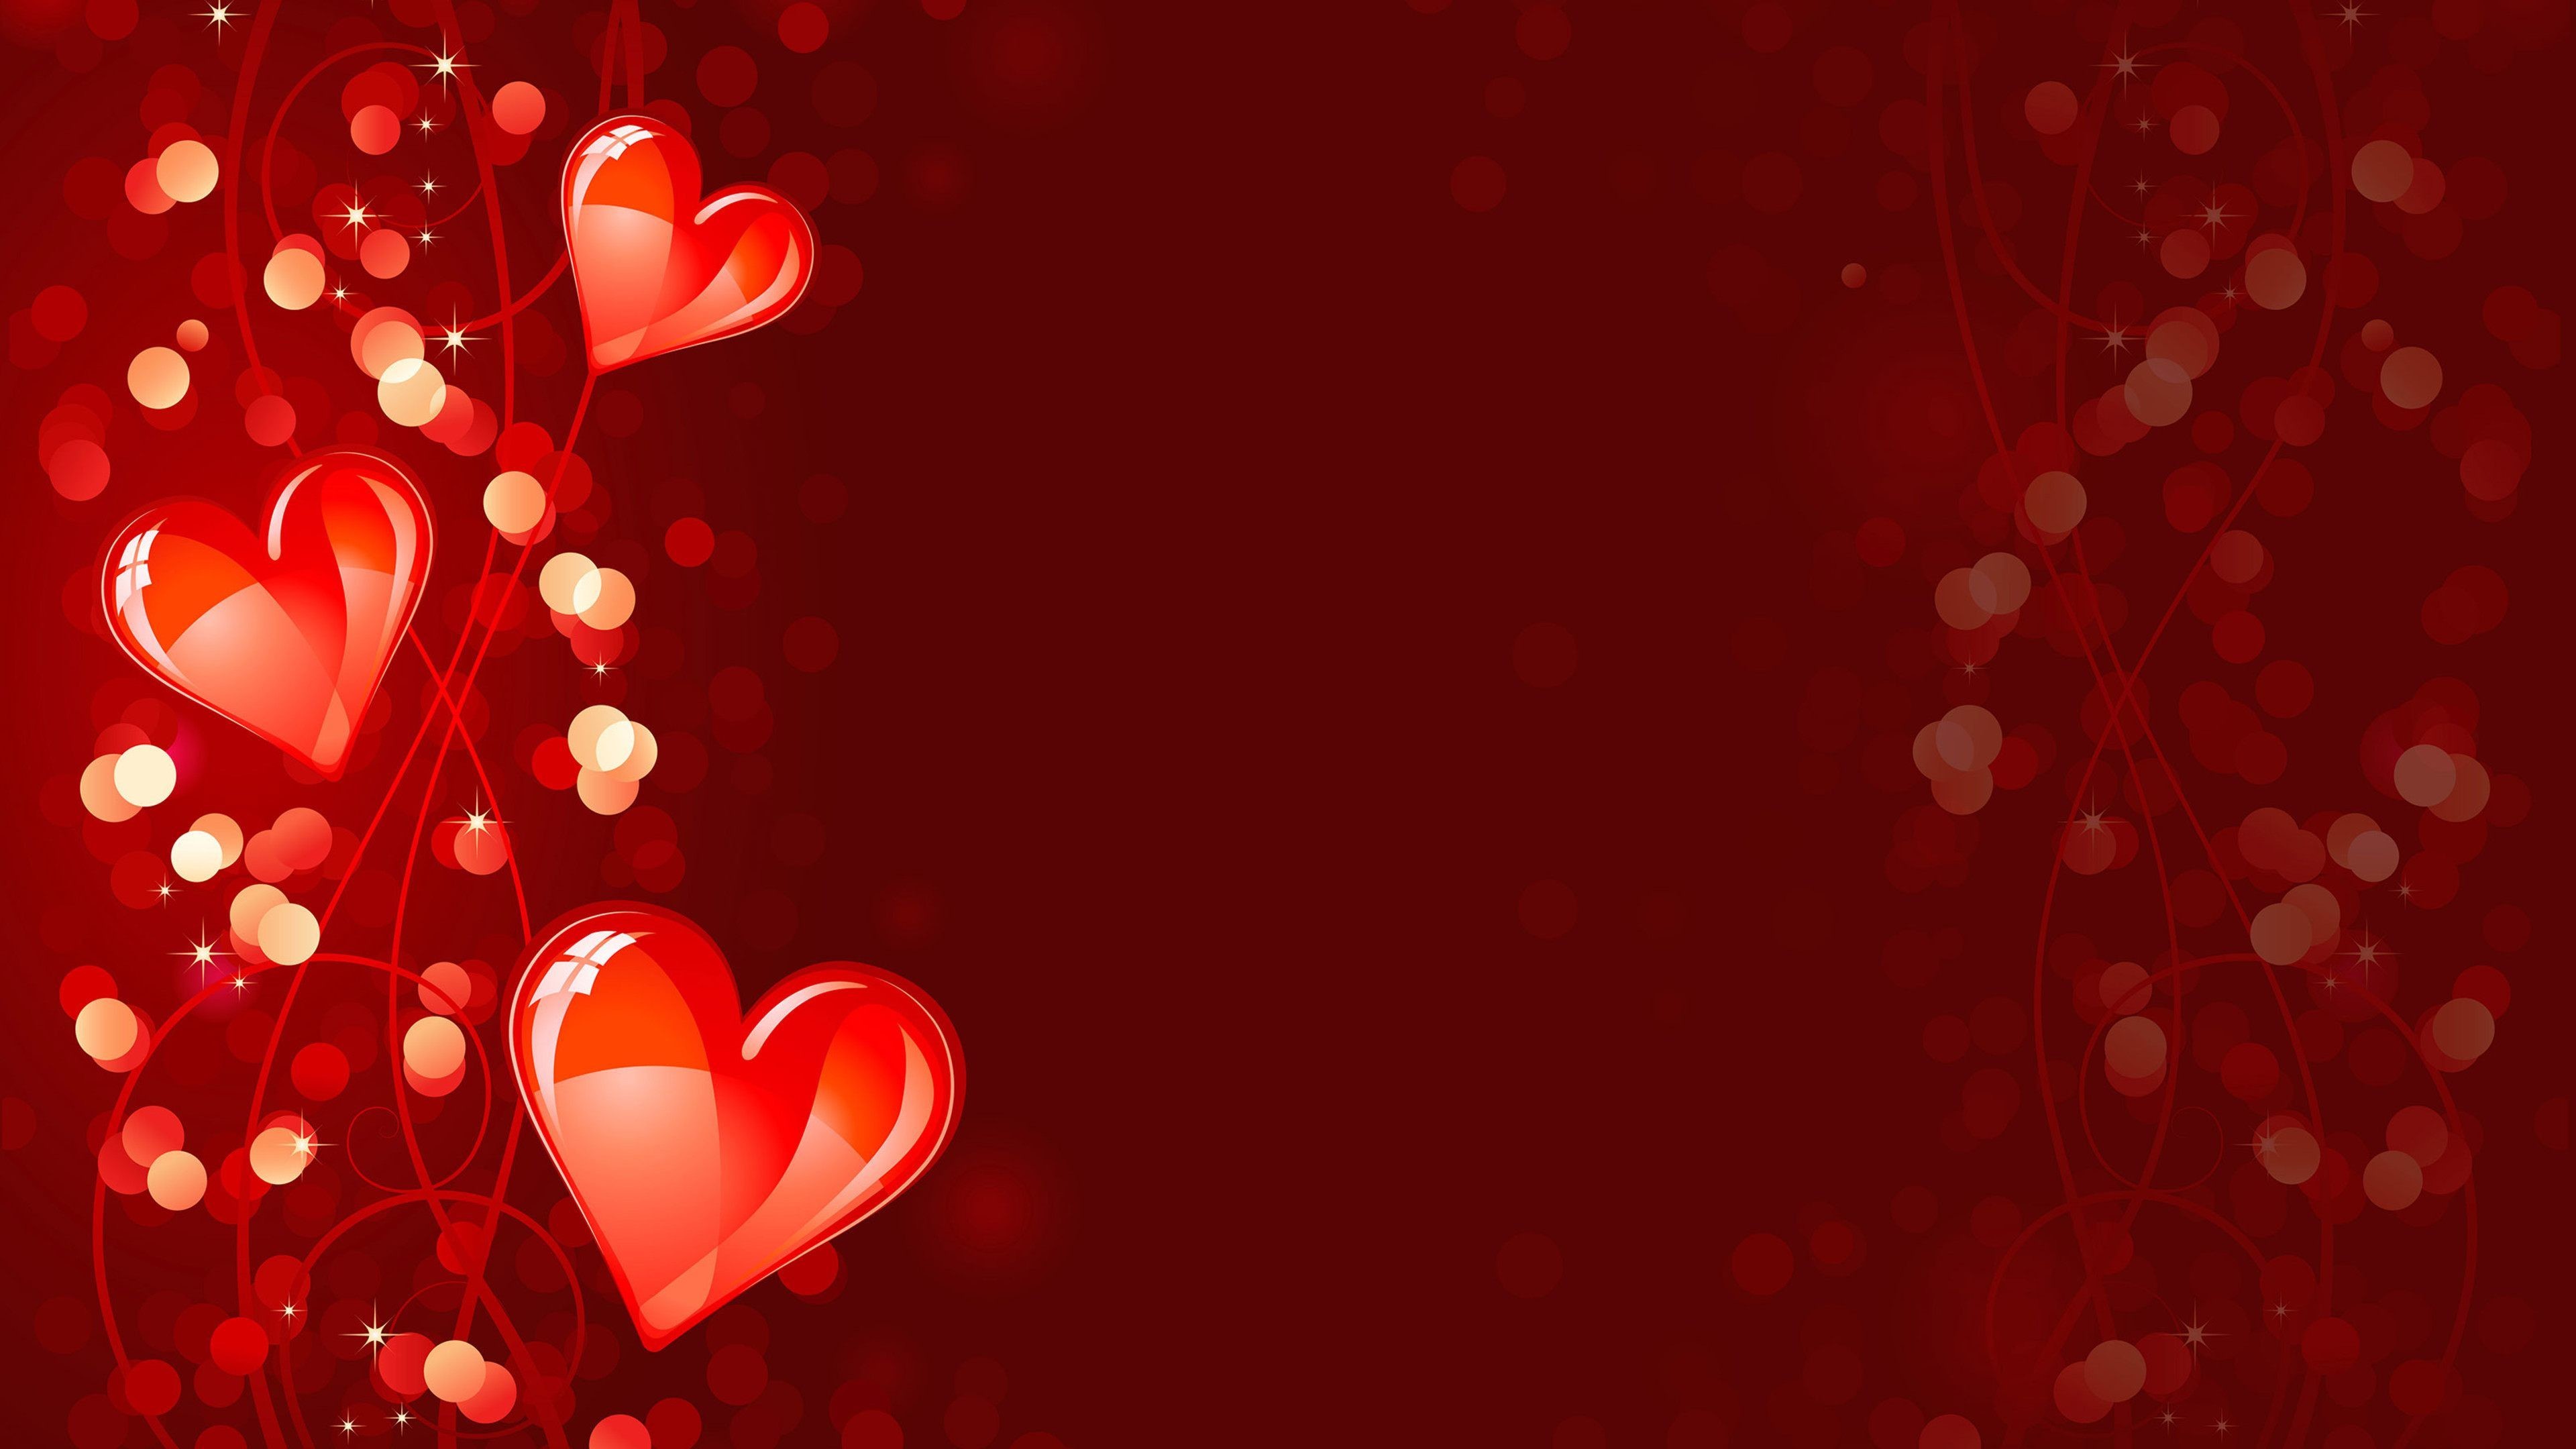 3840x2160 Red Heart Art Water Splash Love Wallpaper - HD Wallpapers & 4K .